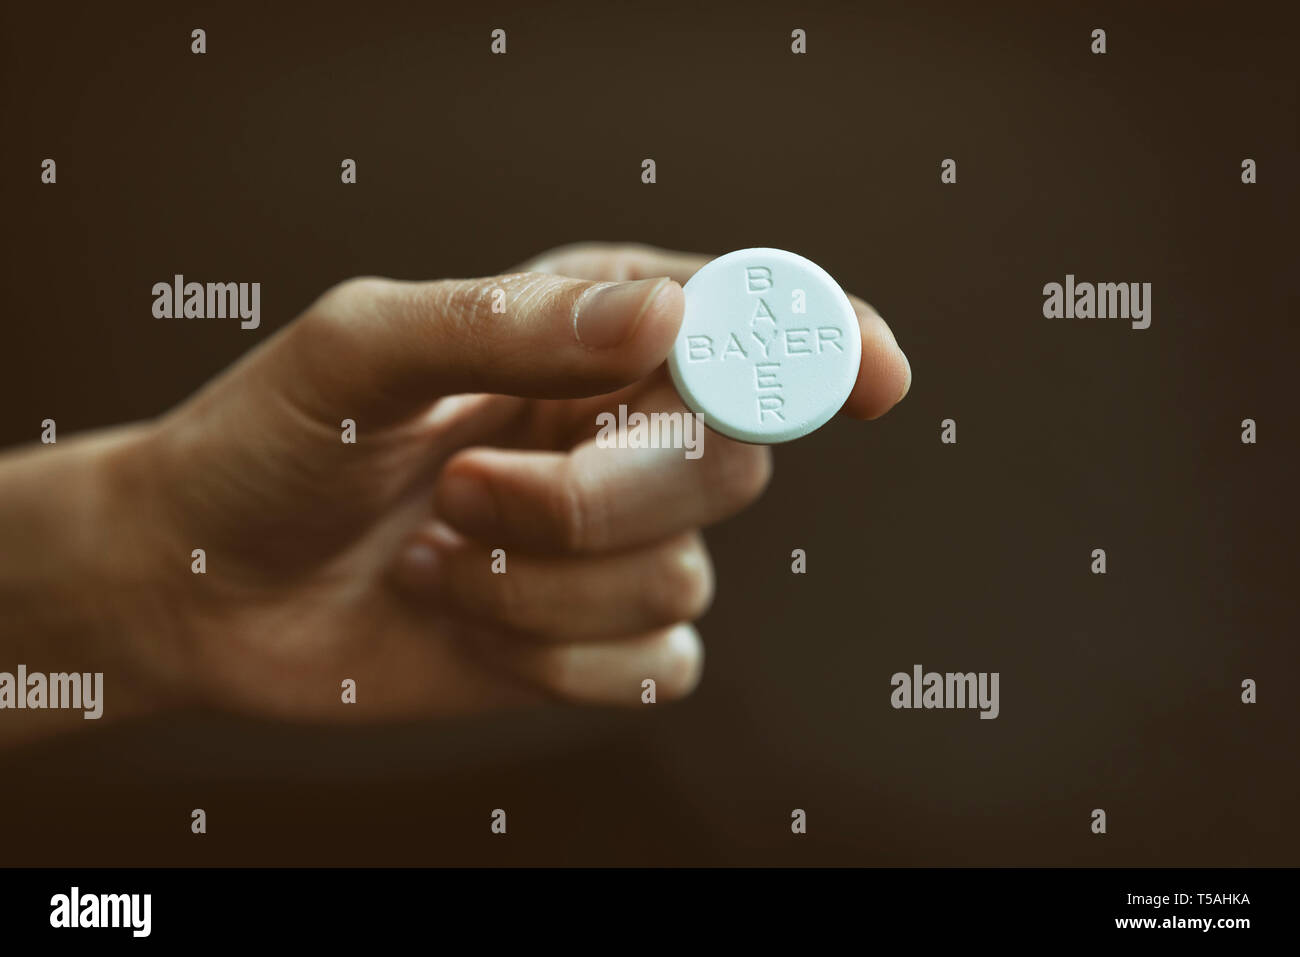 Mano femenina sosteniendo las tabletas de aspirina, conocido como ácido acetilsalicílico (AAS) es un medicamento utilizado para tratar el dolor, fiebre e inflamación. Foto de stock